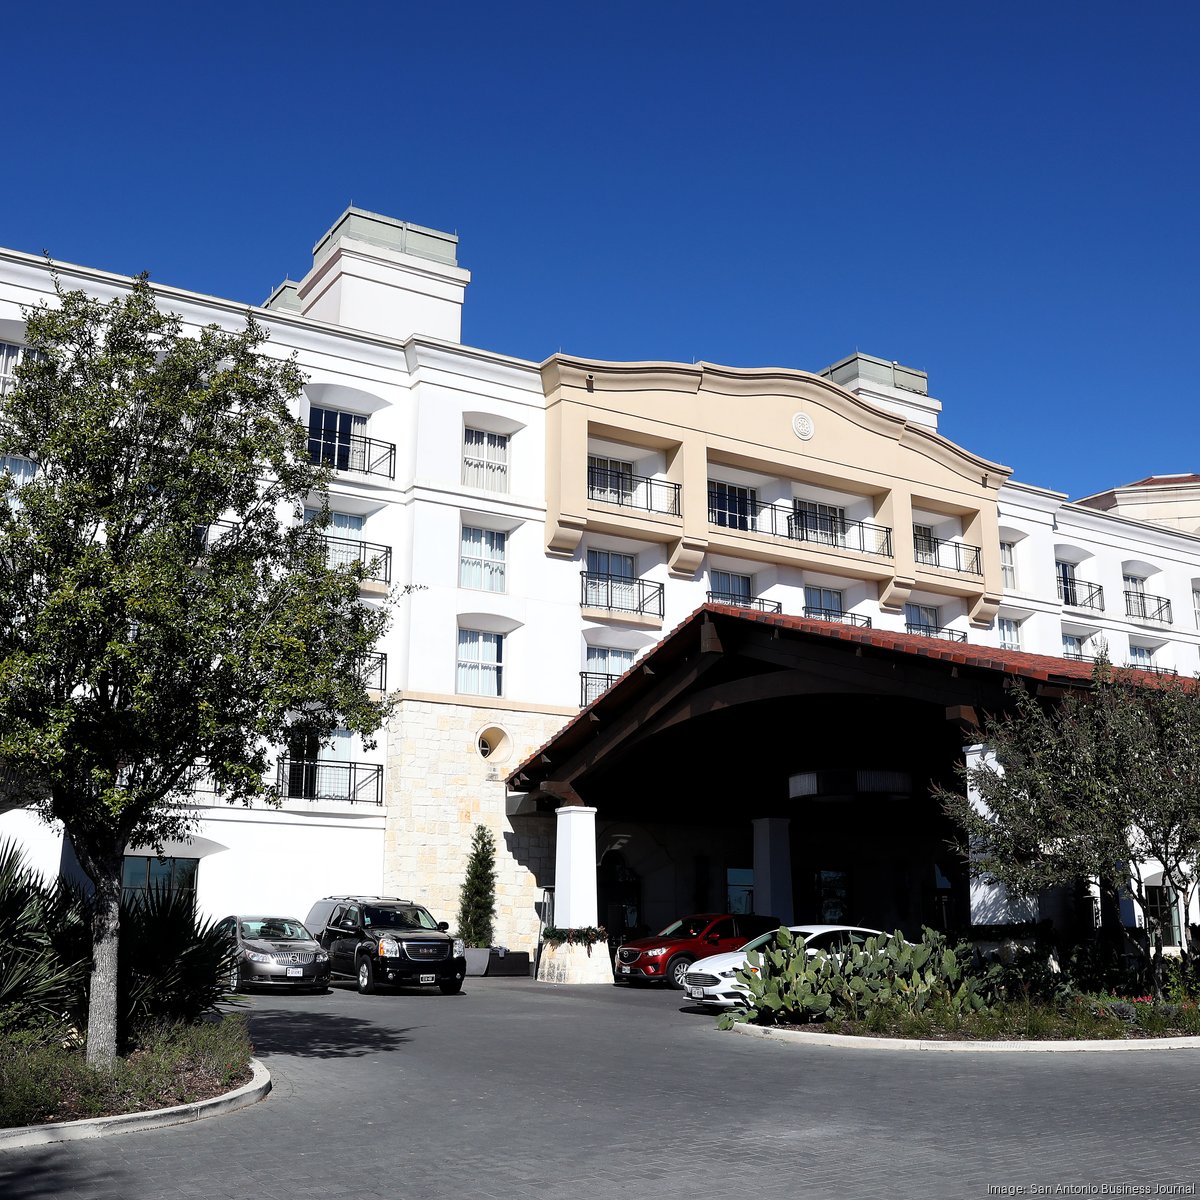 La Cantera Resort & Spa- Deluxe San Antonio, TX Hotels- Business Travel  Hotels in San Antonio